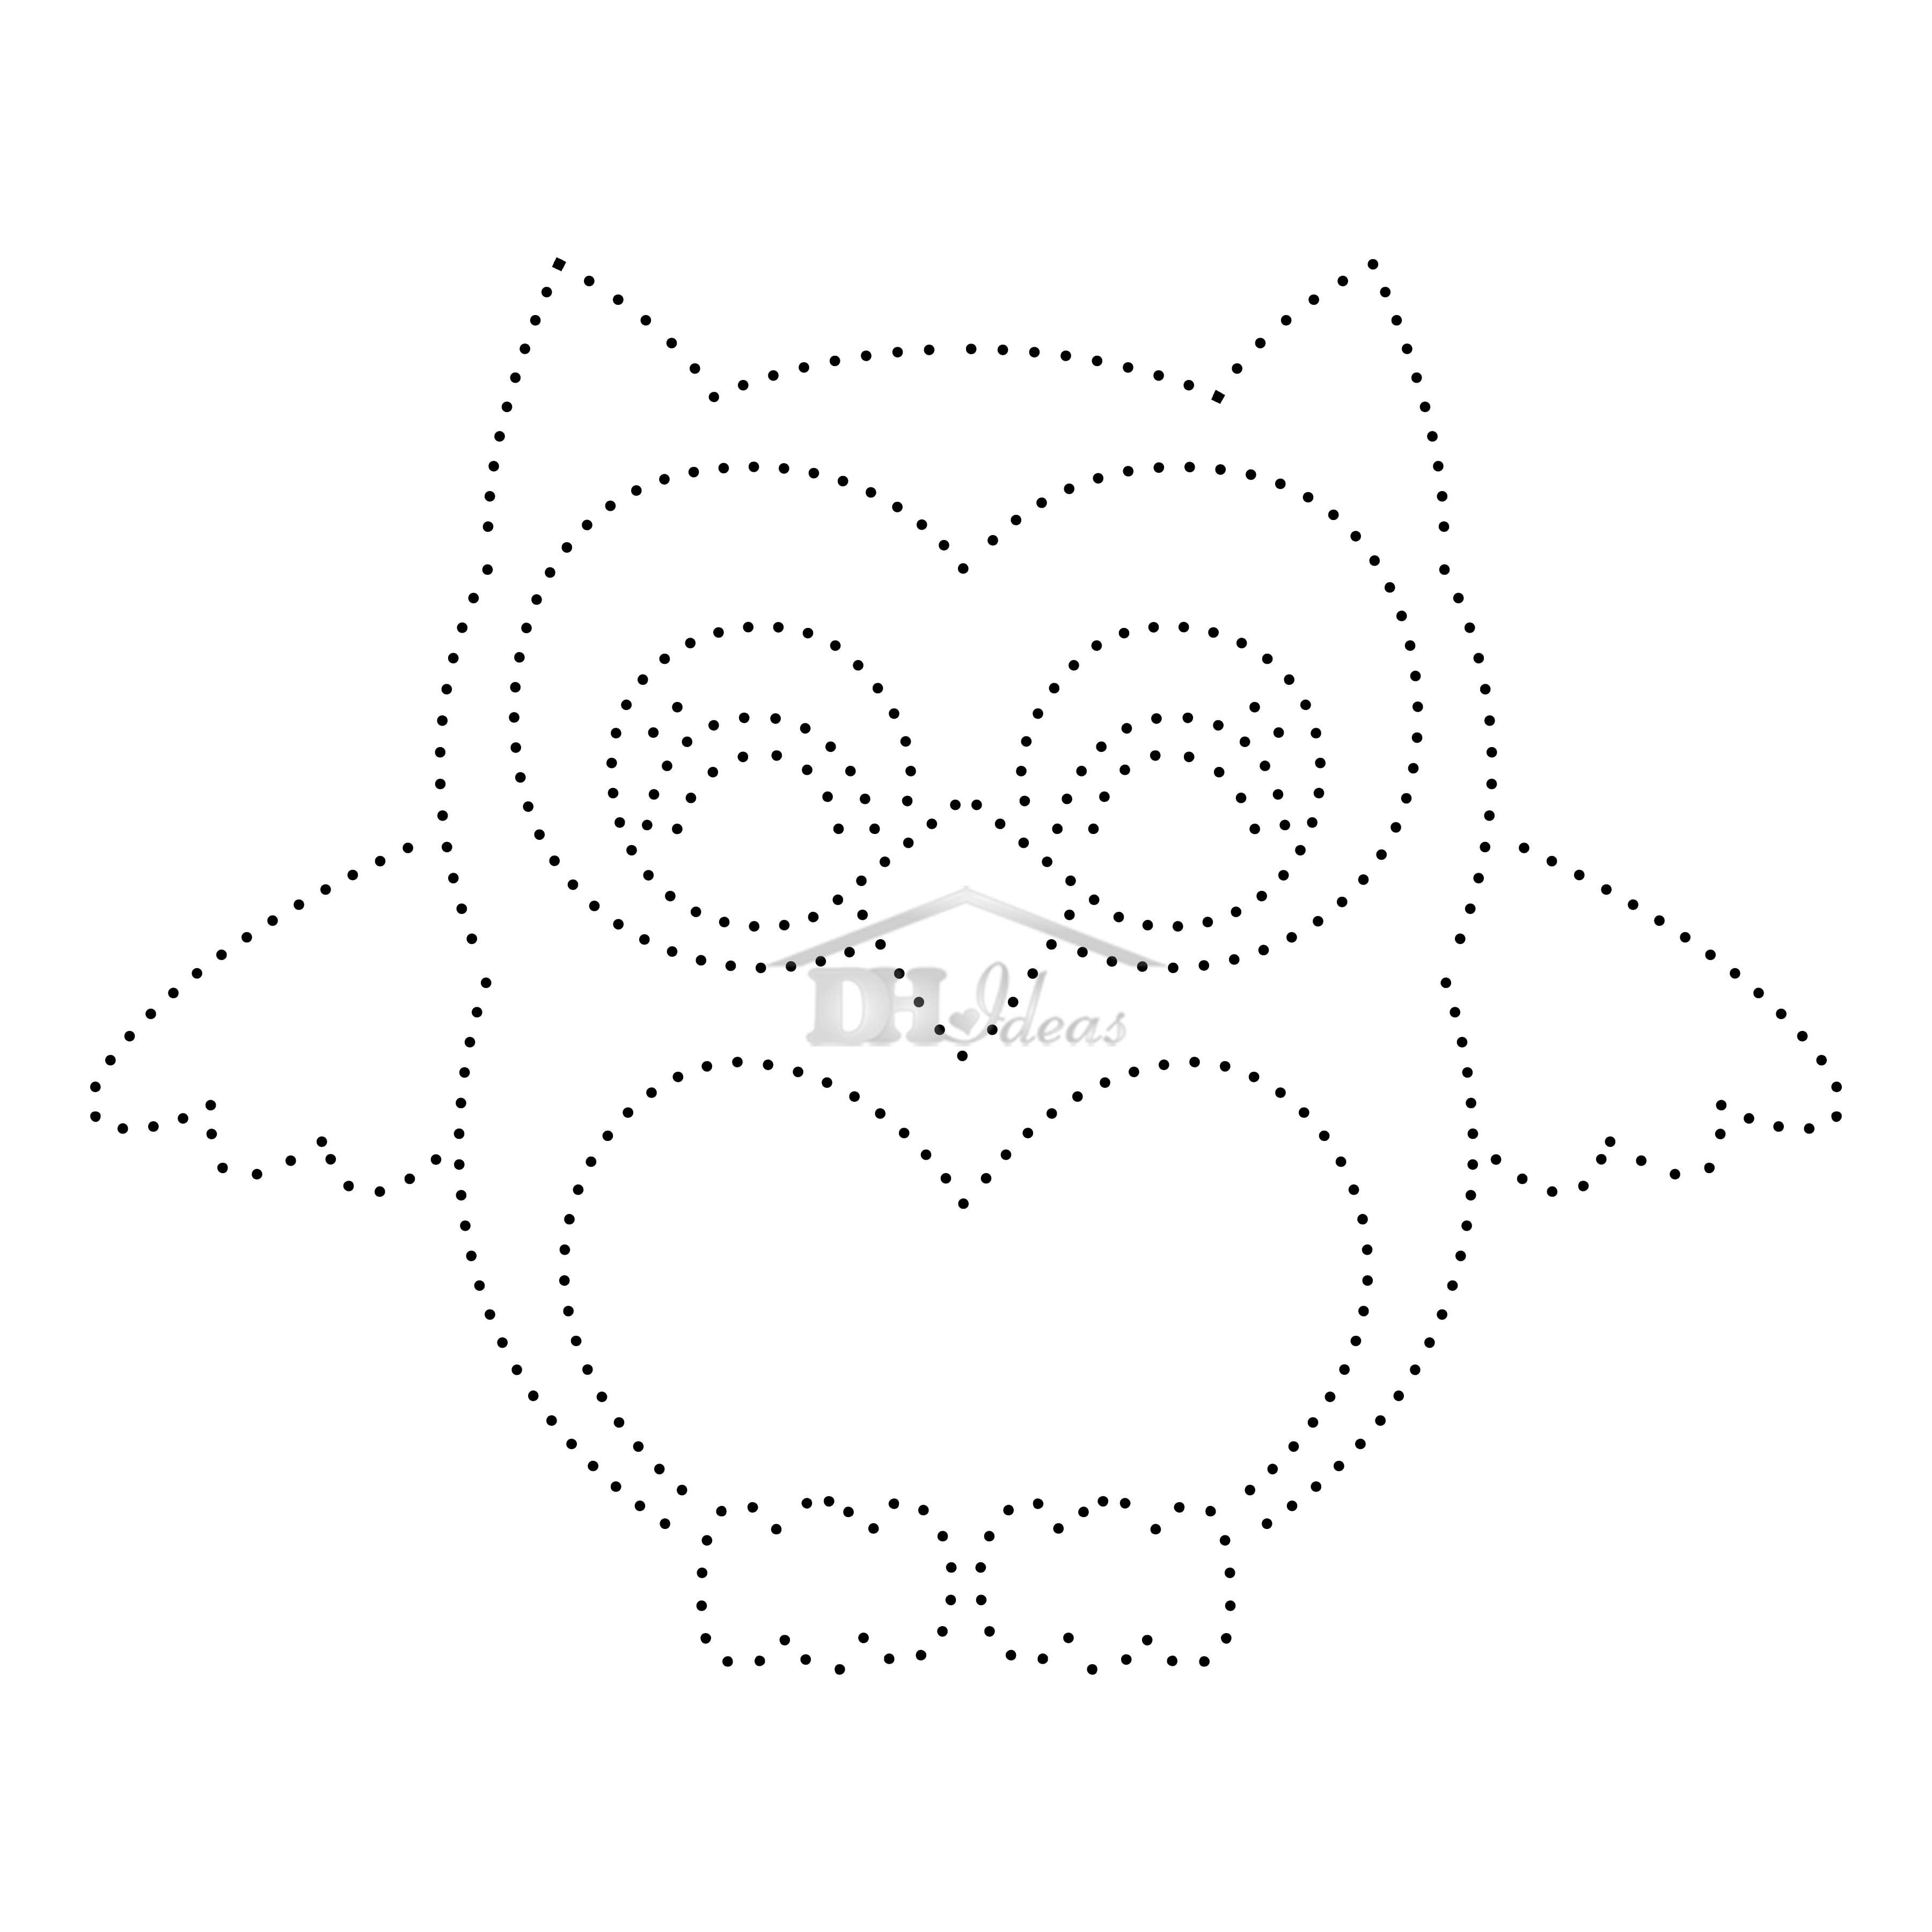 30 Free Printable String Art Patterns Direct Download Decor Home Owl - Free Printable String Art Patterns